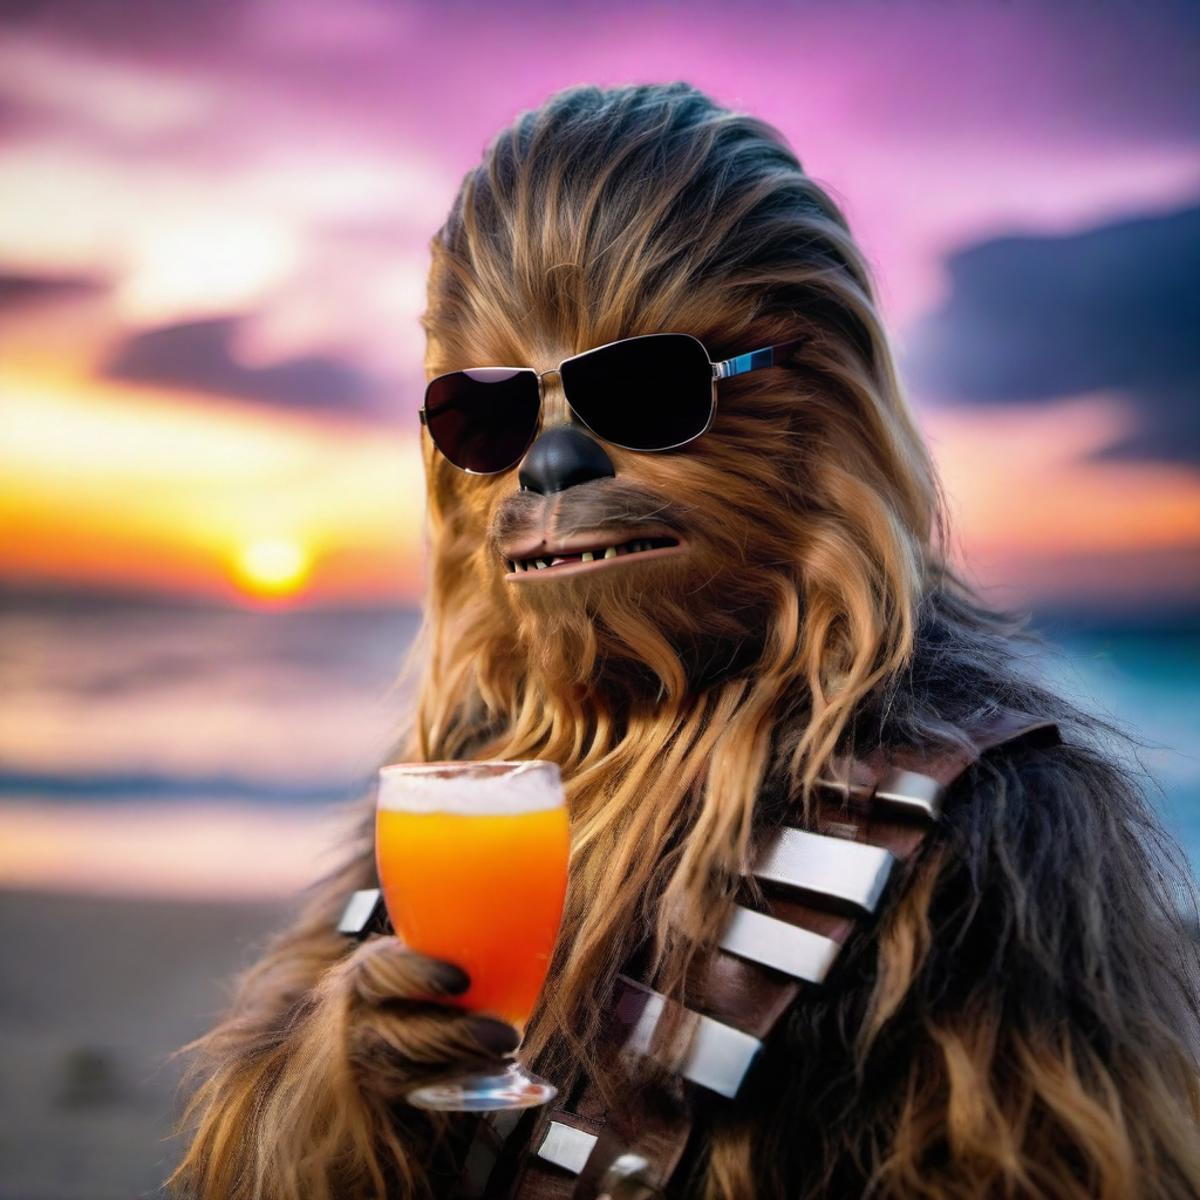 Chewbacca - Star Wars - SDXL image by PhotobAIt